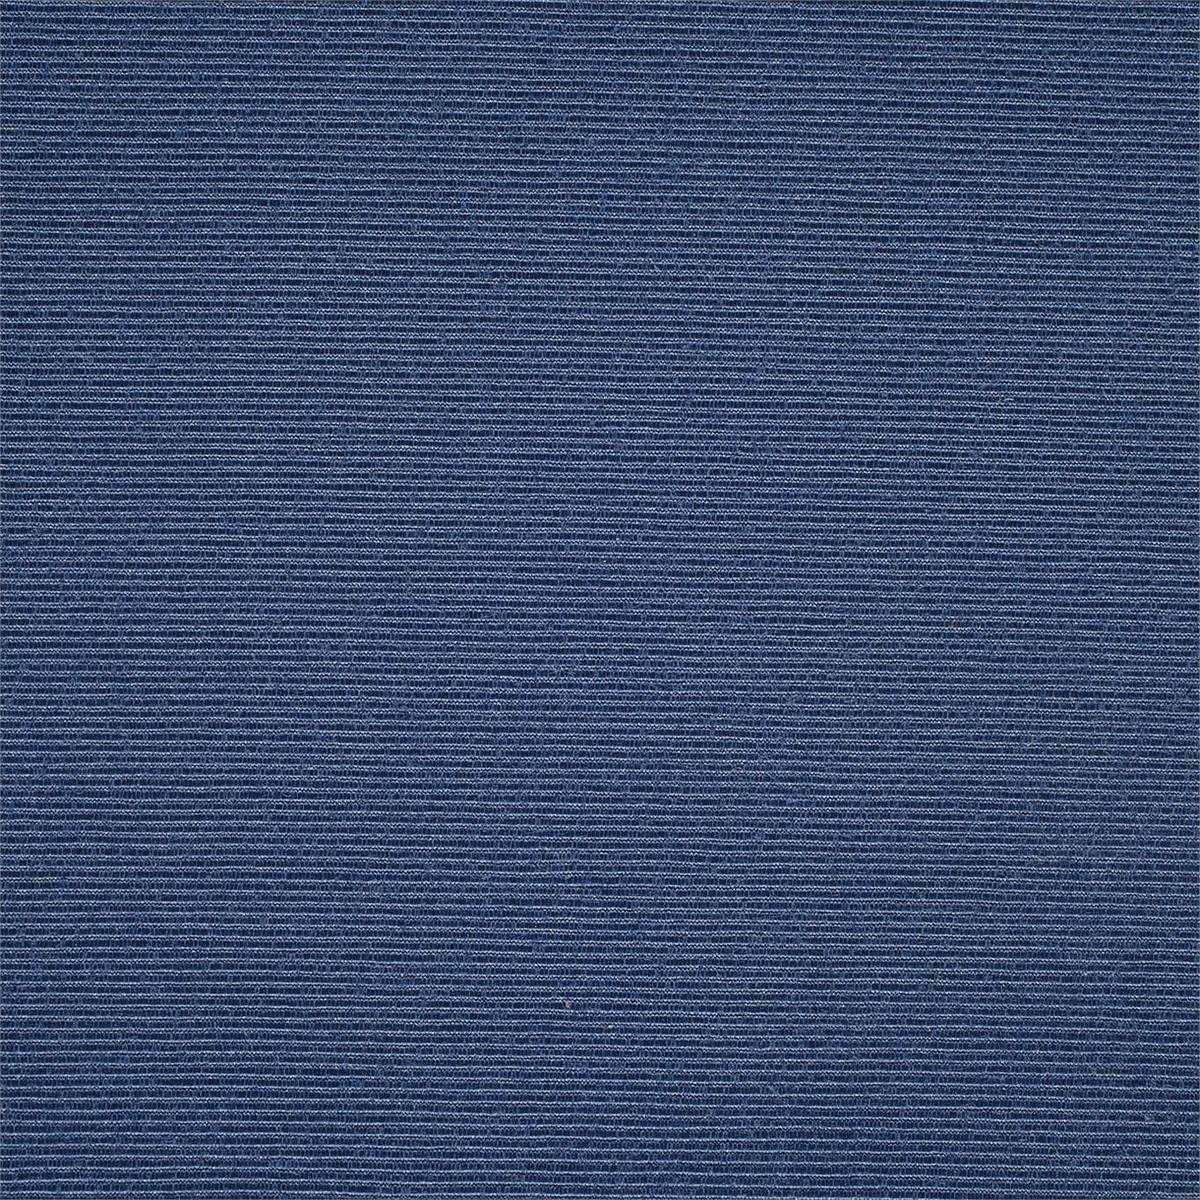 Savano Sapphire Fabric by Harlequin